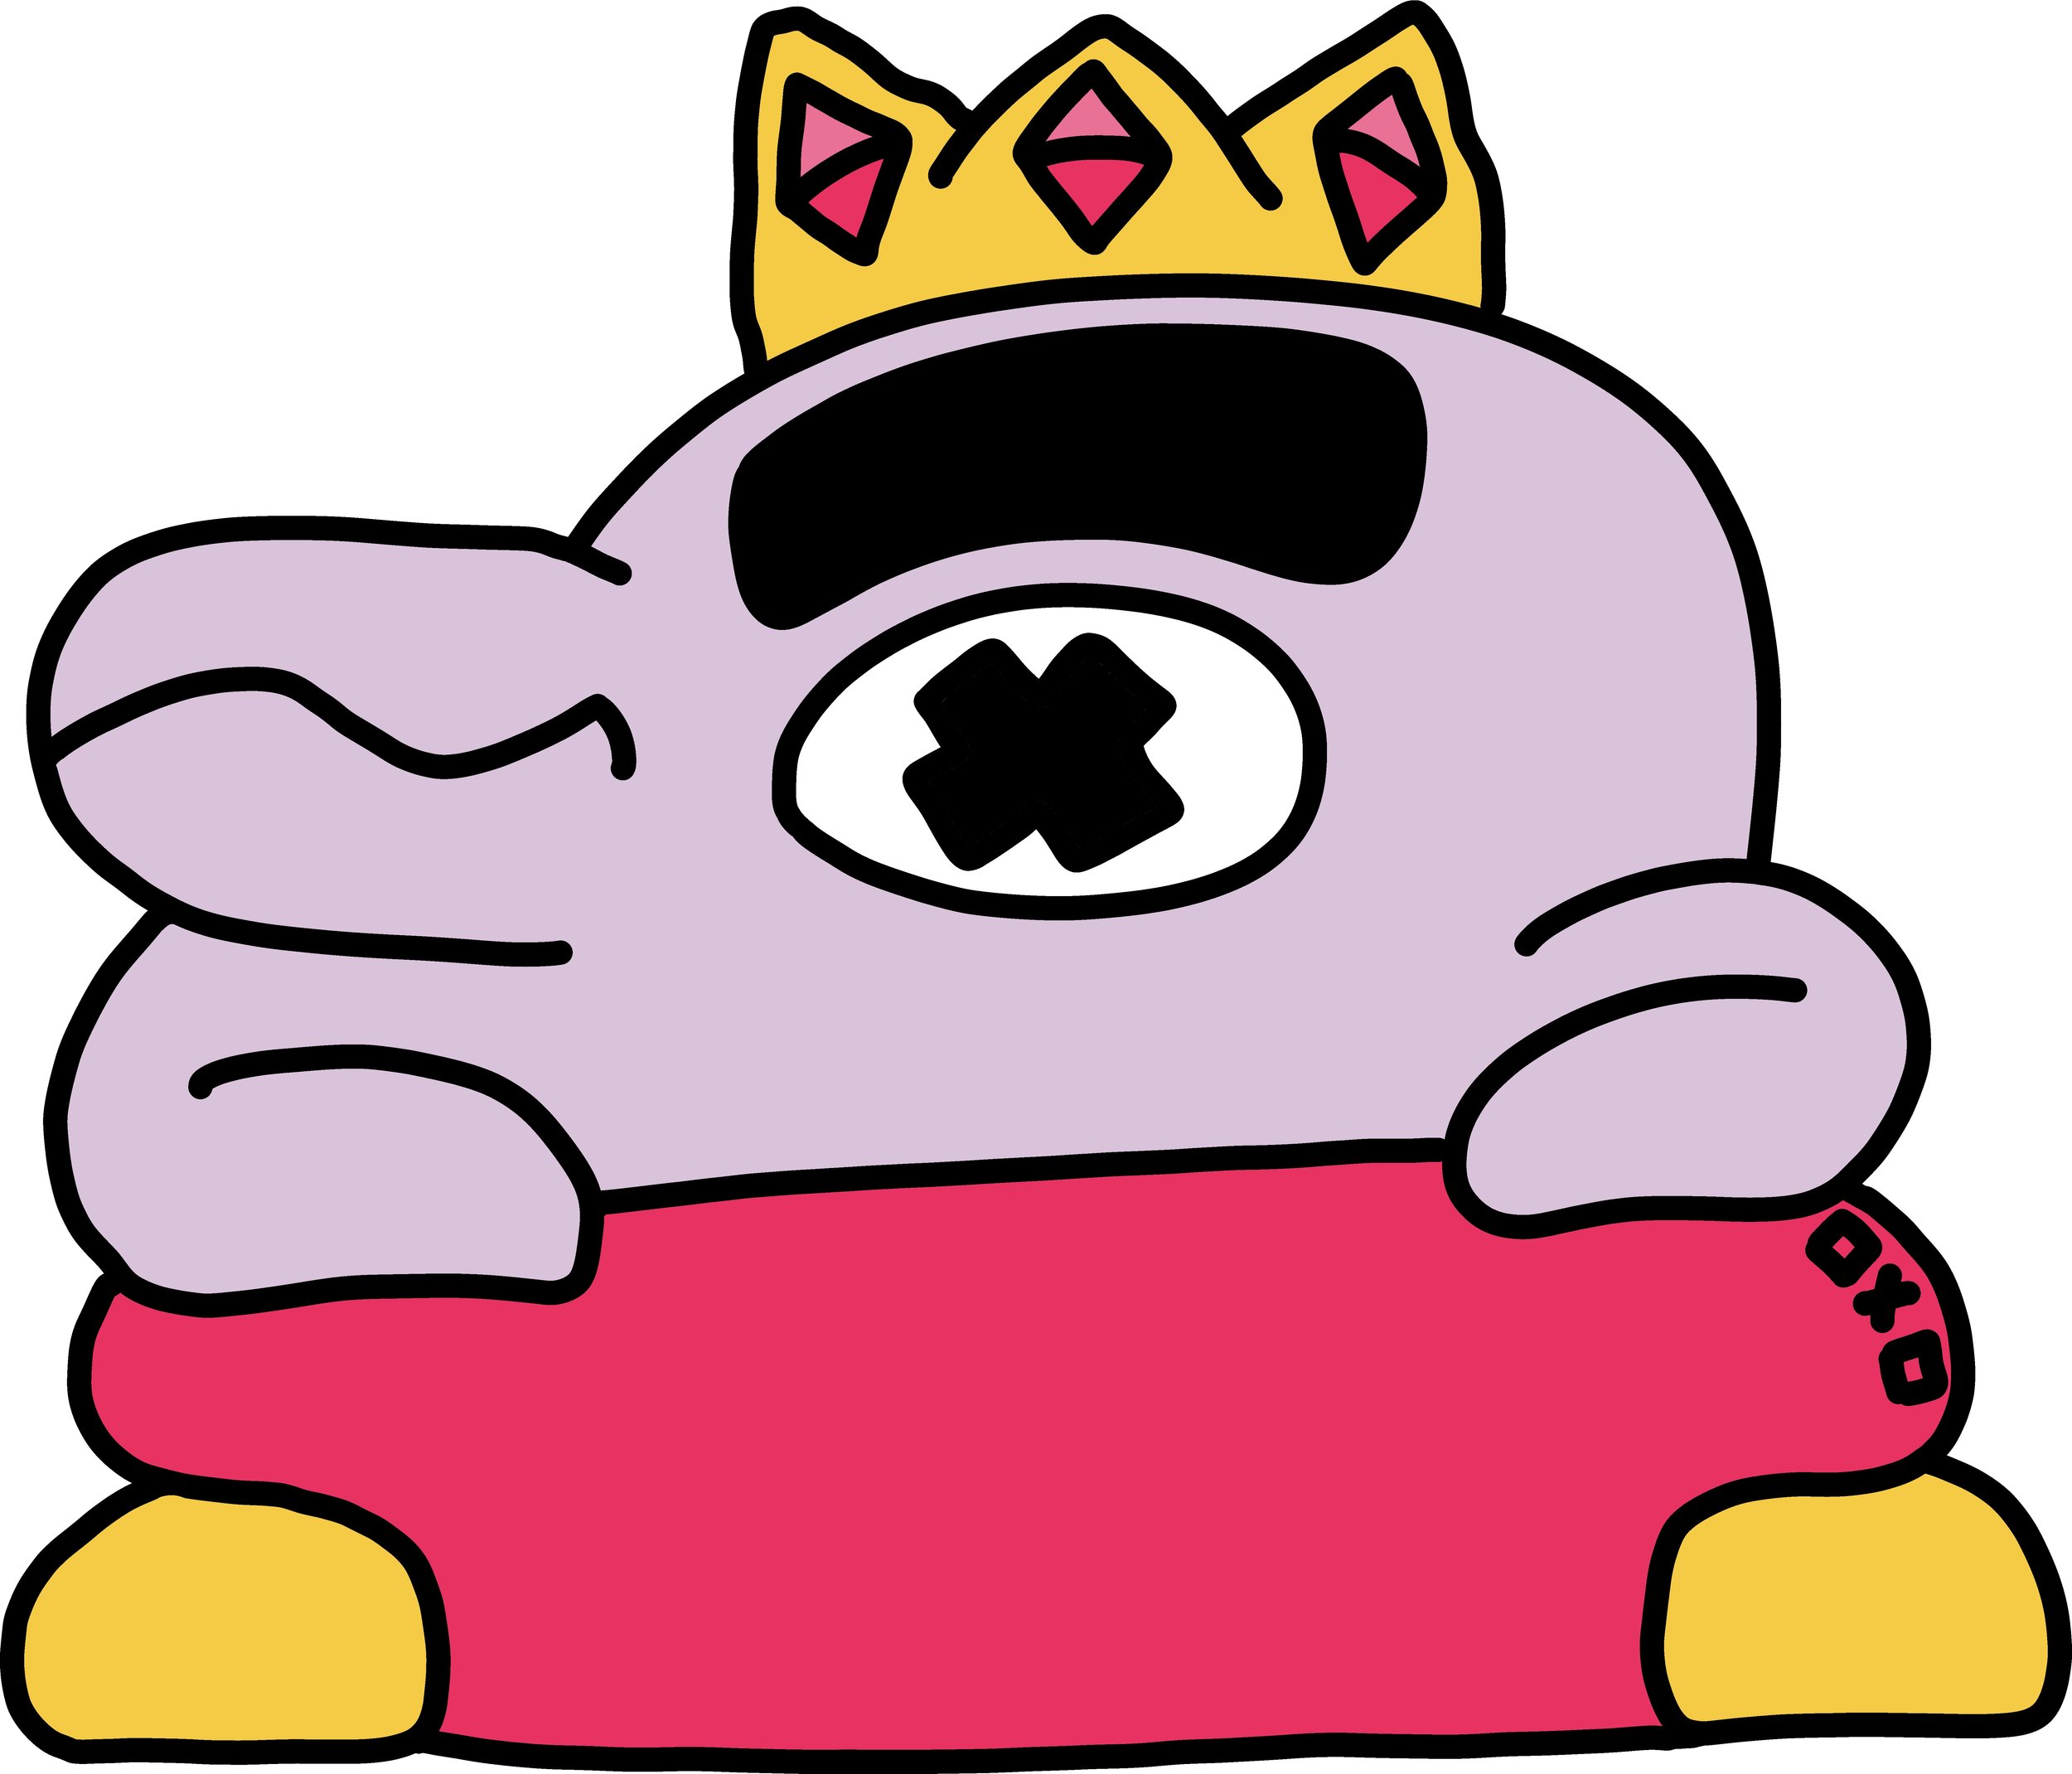 Crown-Dummy.jpg